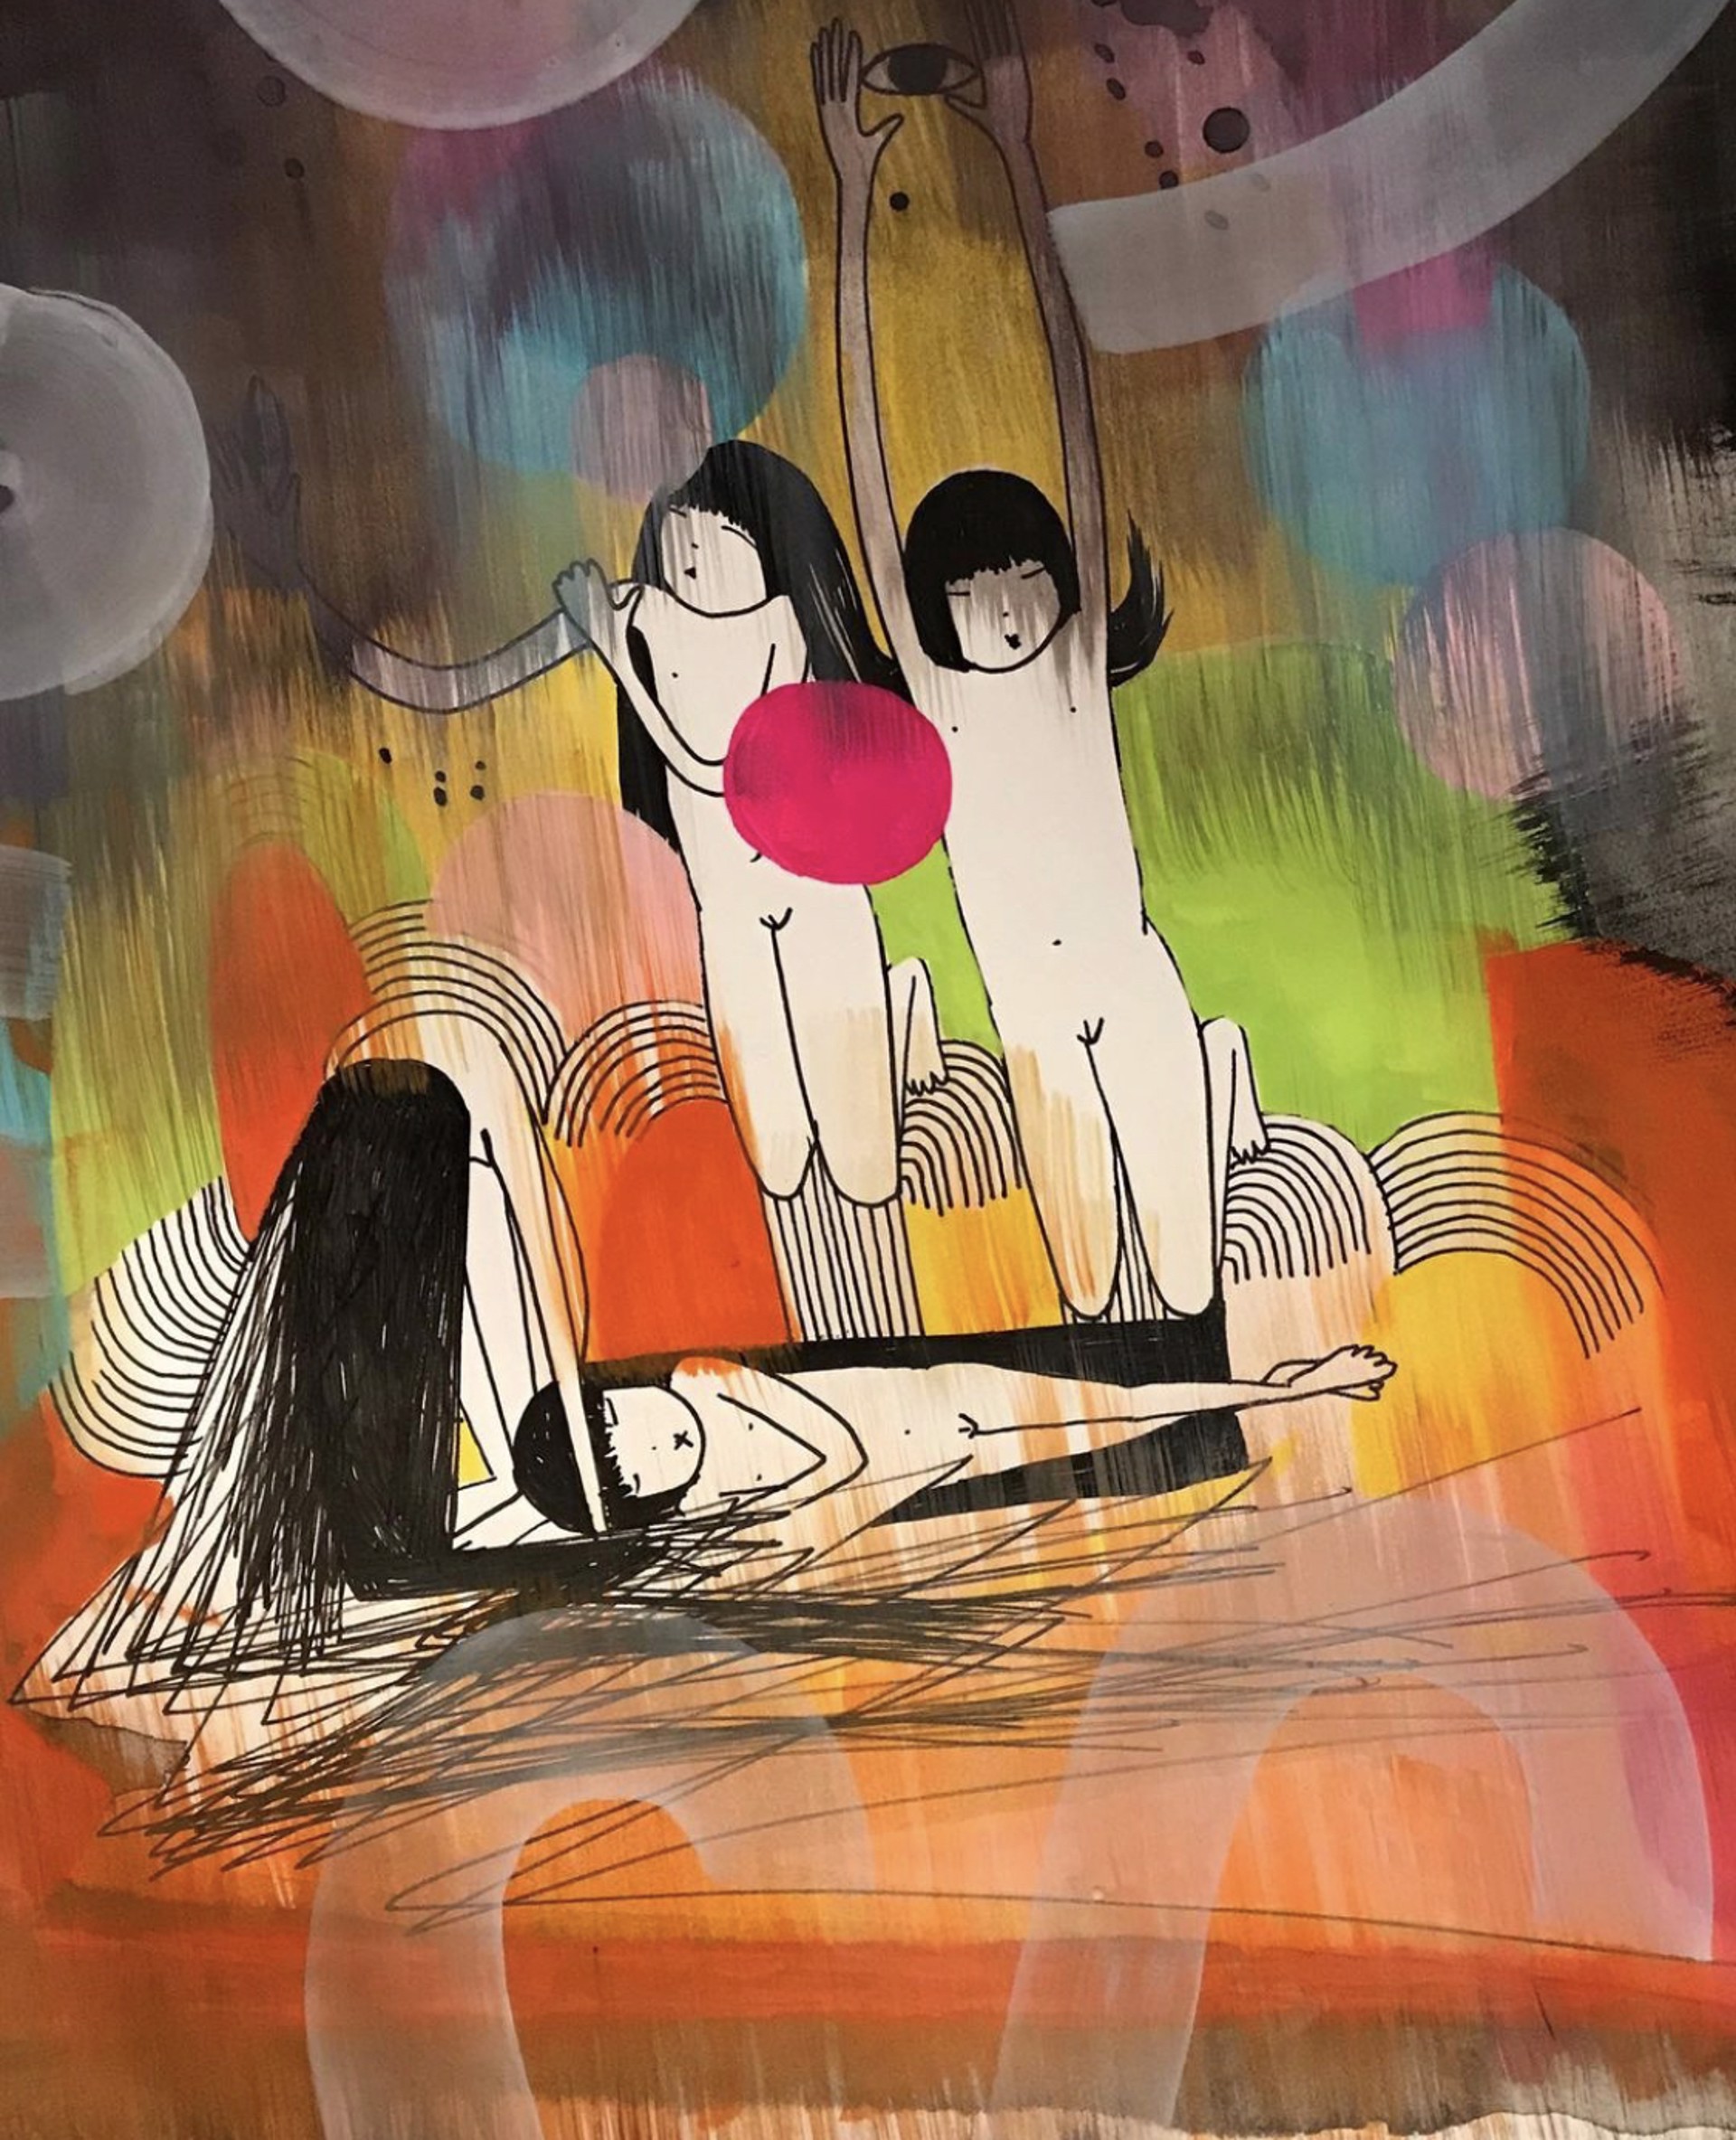 Four Girls in the Dreamworld by Choichun Leung